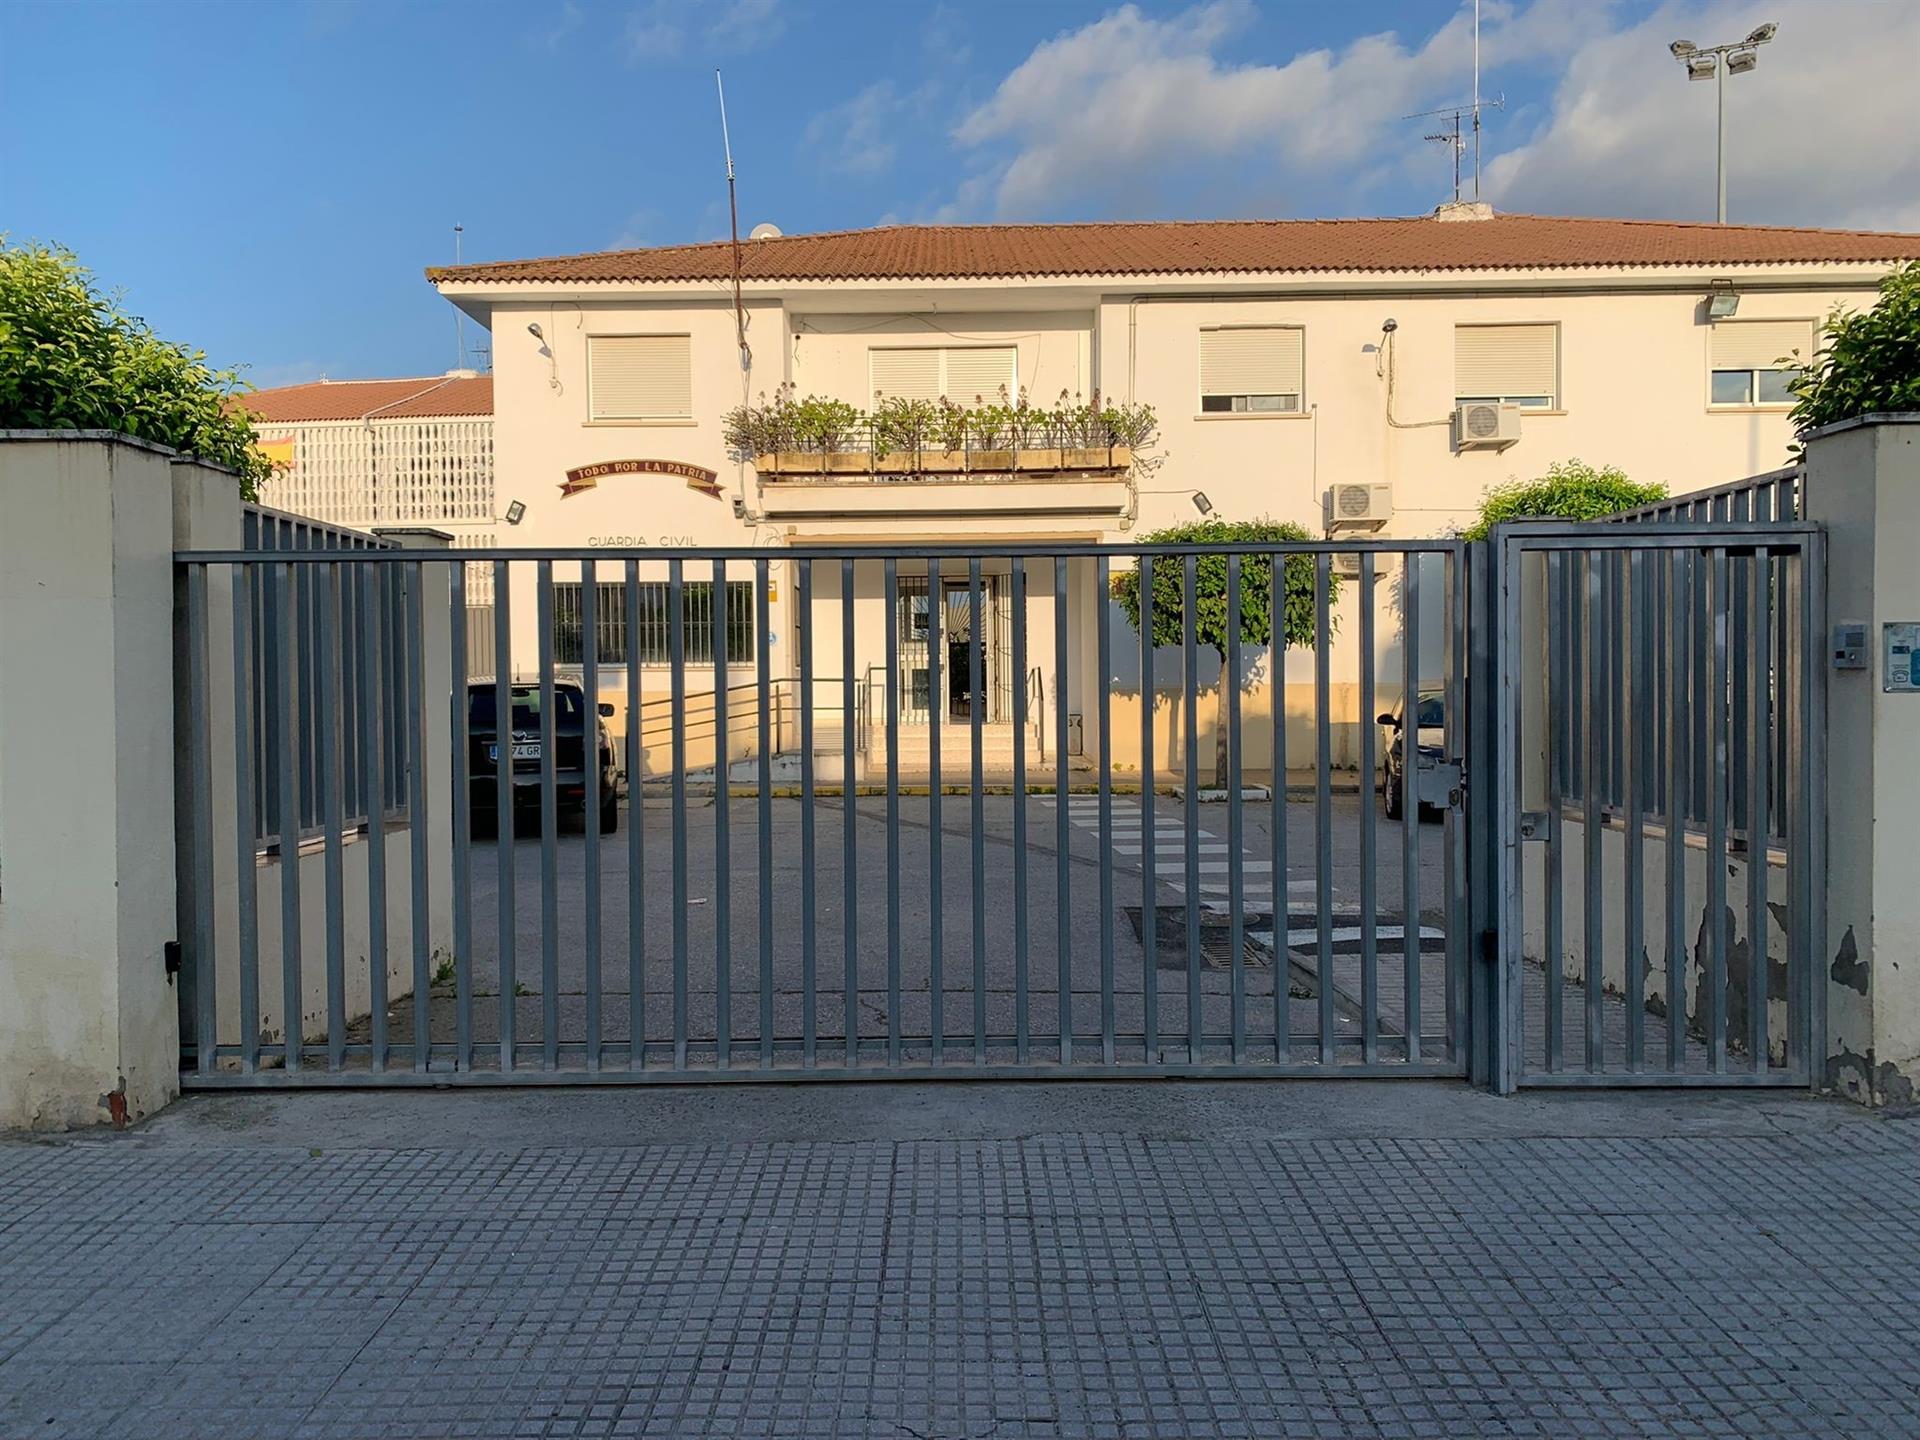 Acceso al cuartel de La Algaba, en Sevilla, donde un encapuchado se estampa con un coche robado contra la puerta.